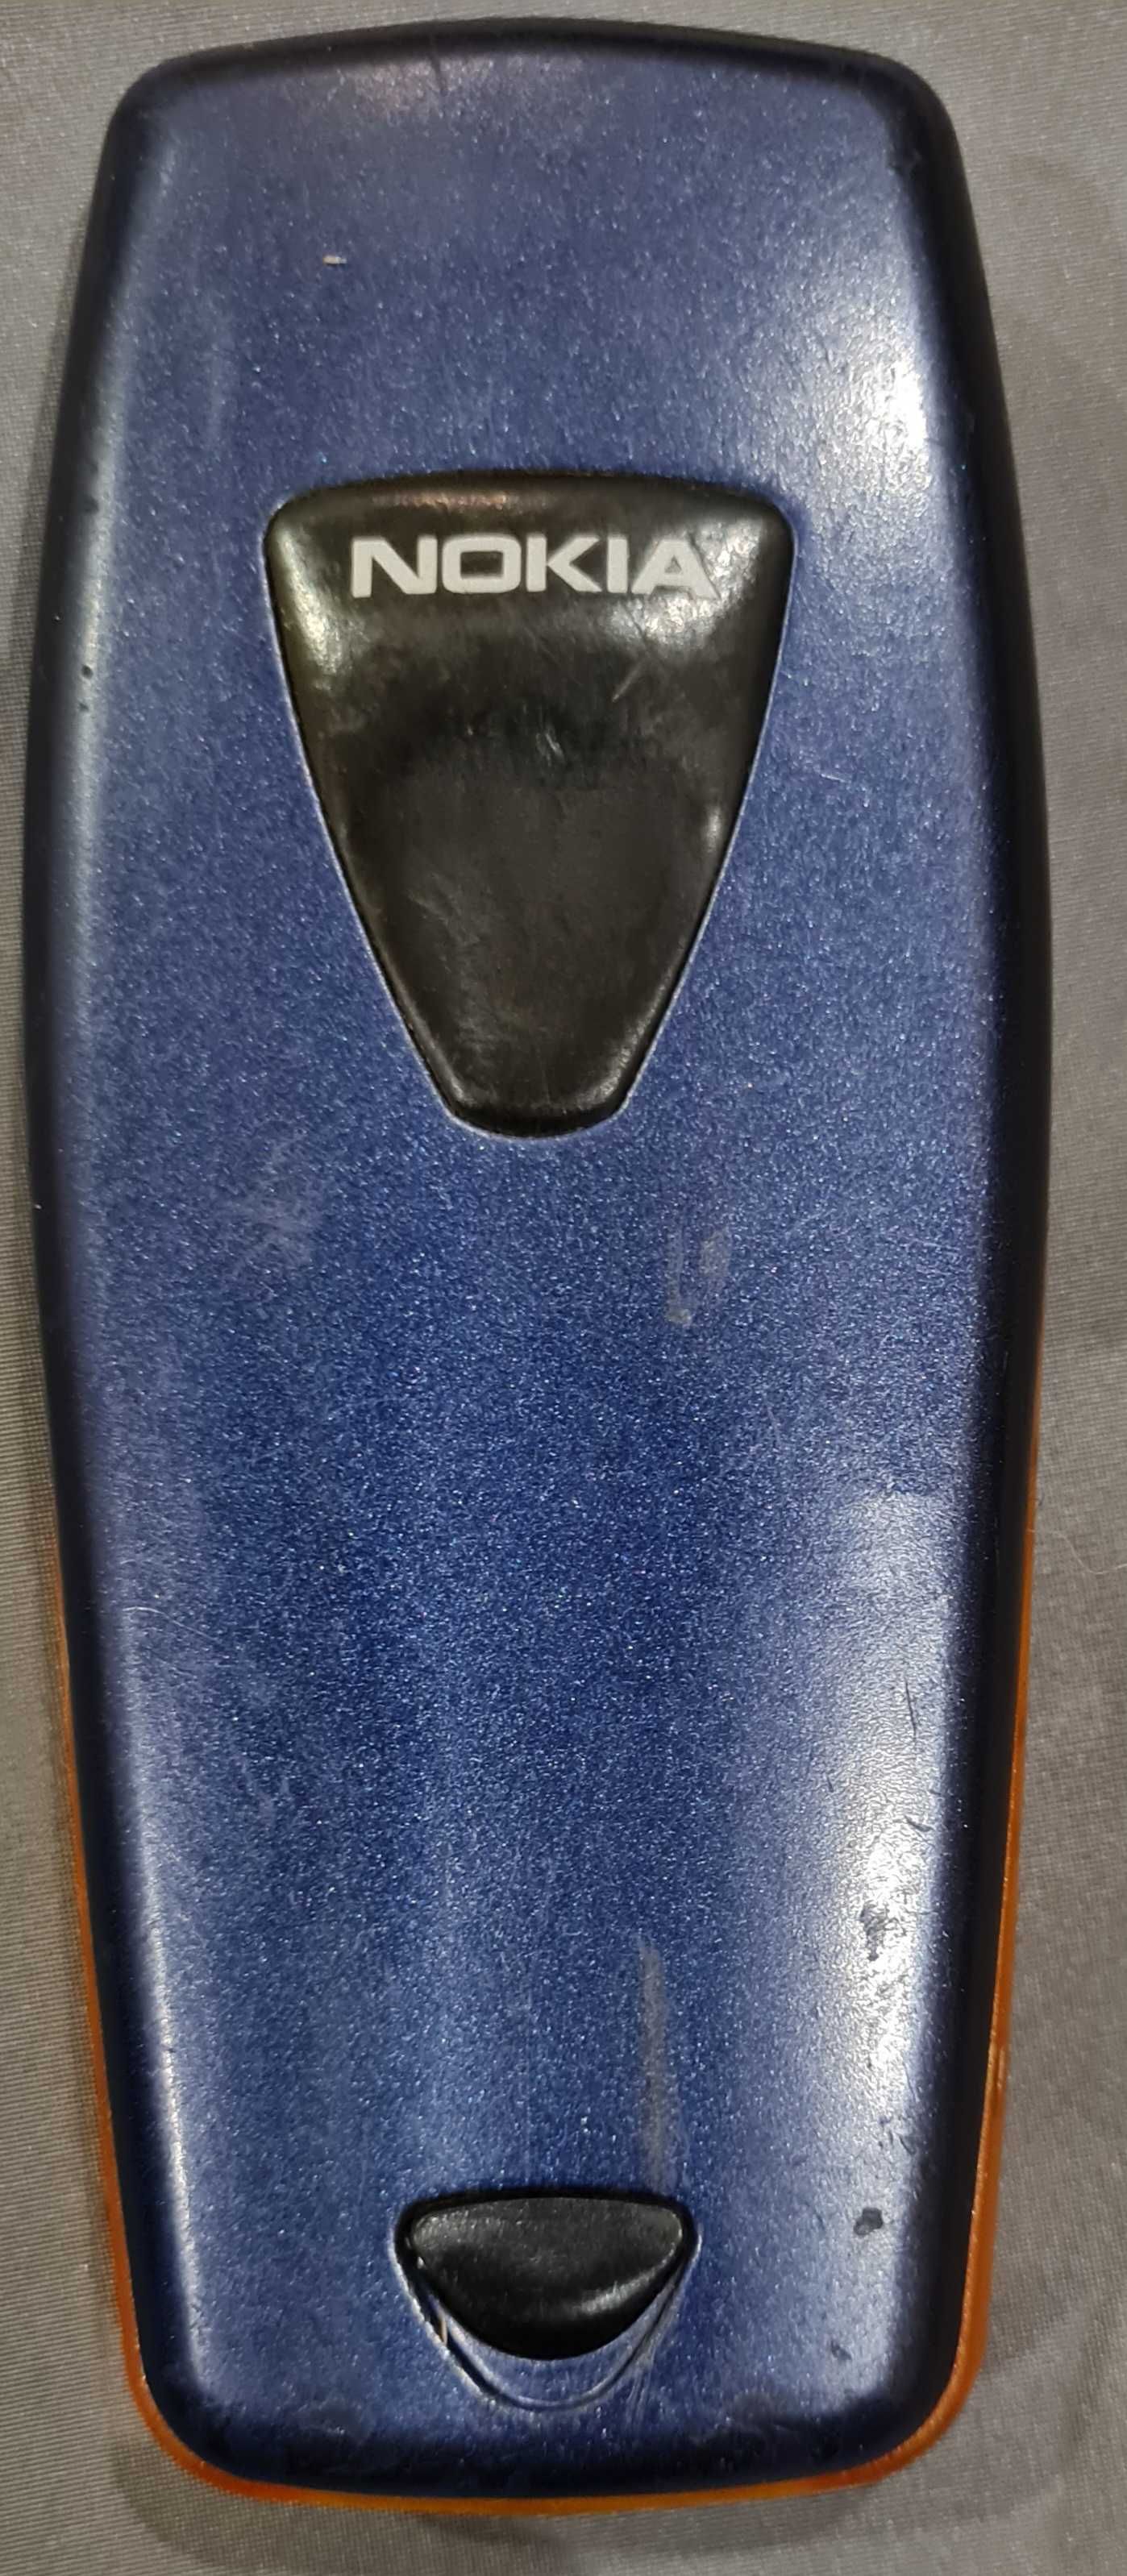 Nokia 3510i Germany